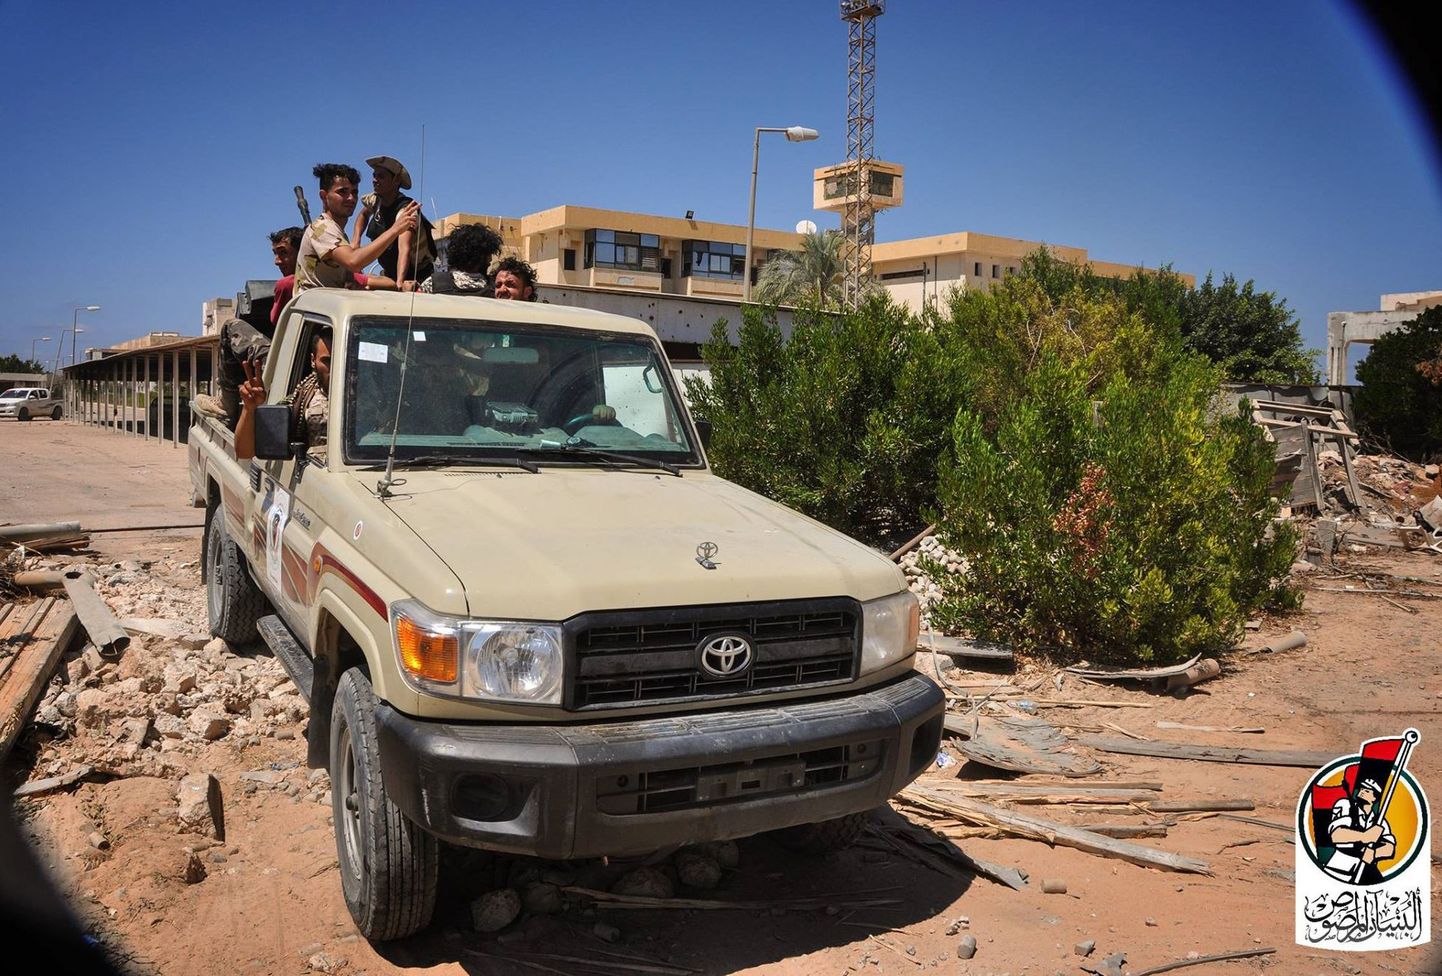 Liibüa valitsusväed Sirtes.